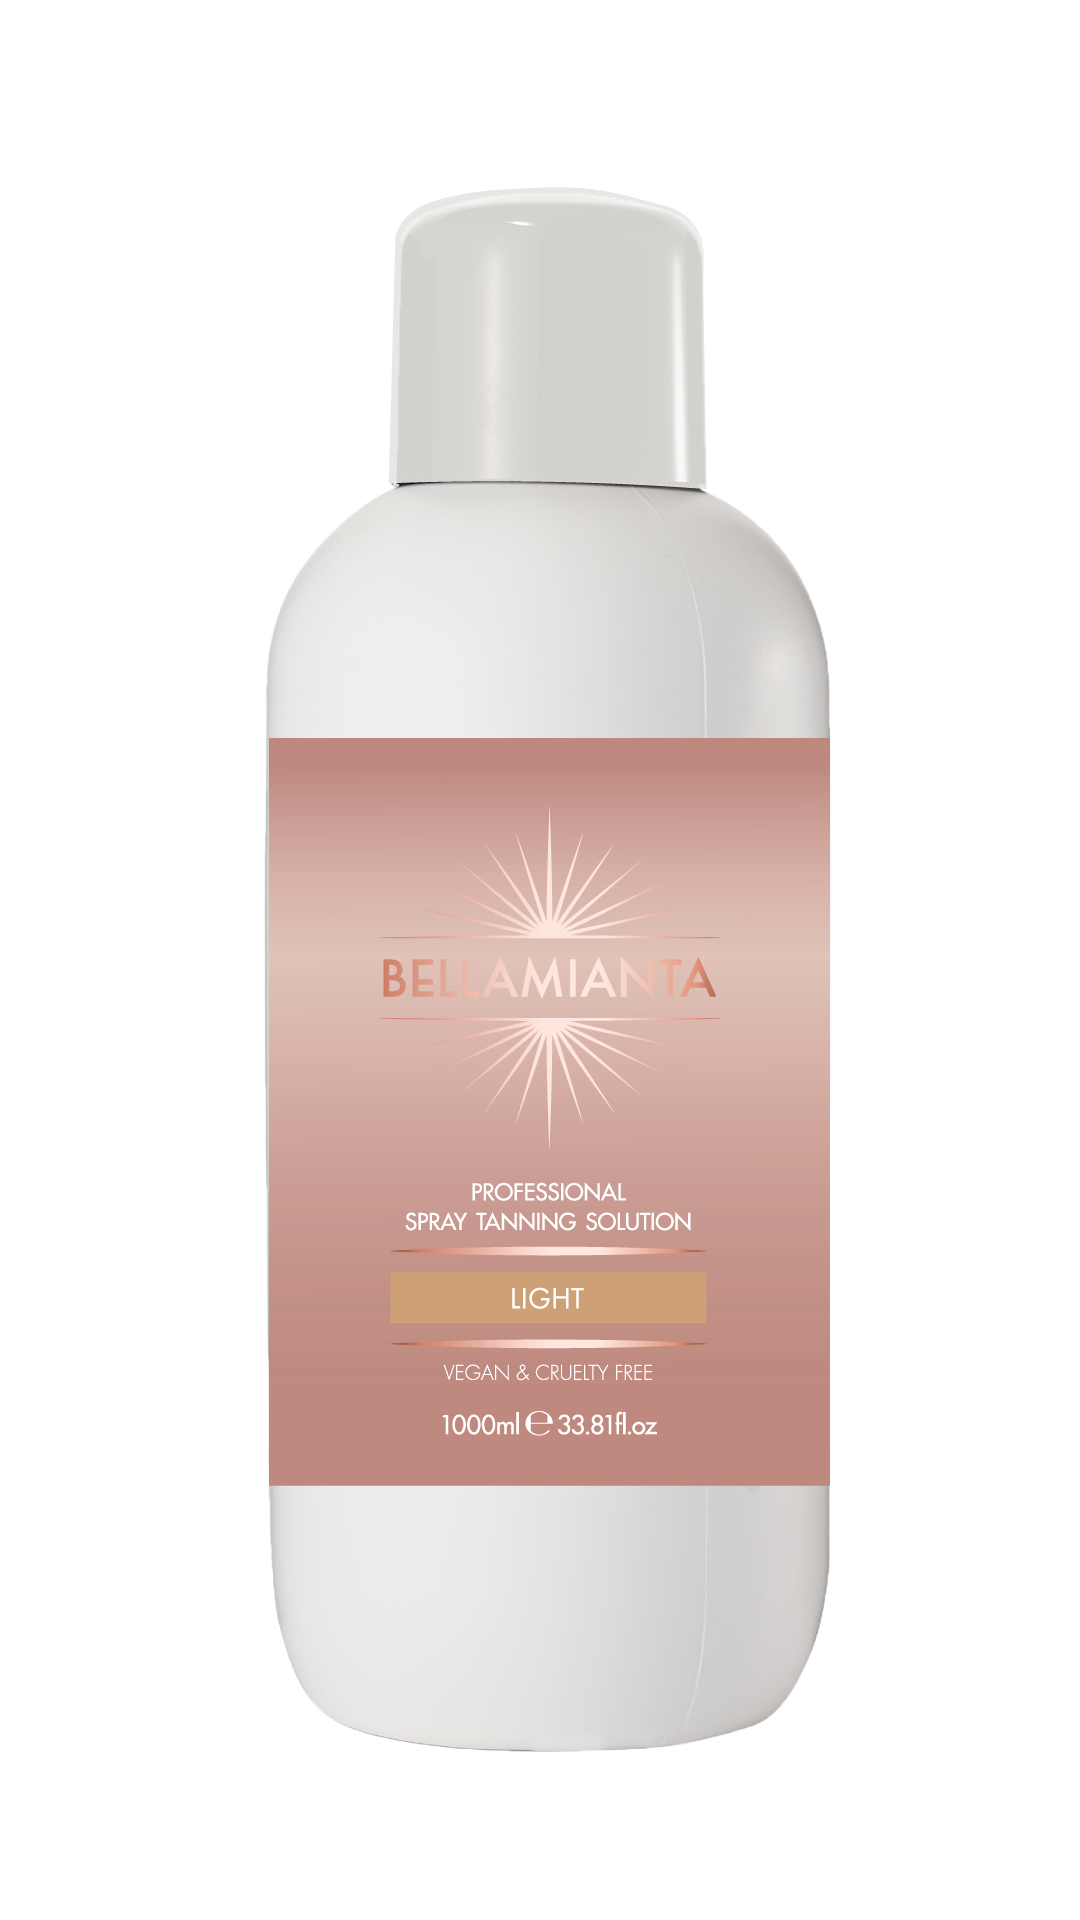 Bellamianta Professional Spray Tanning Solution Light 1000ml